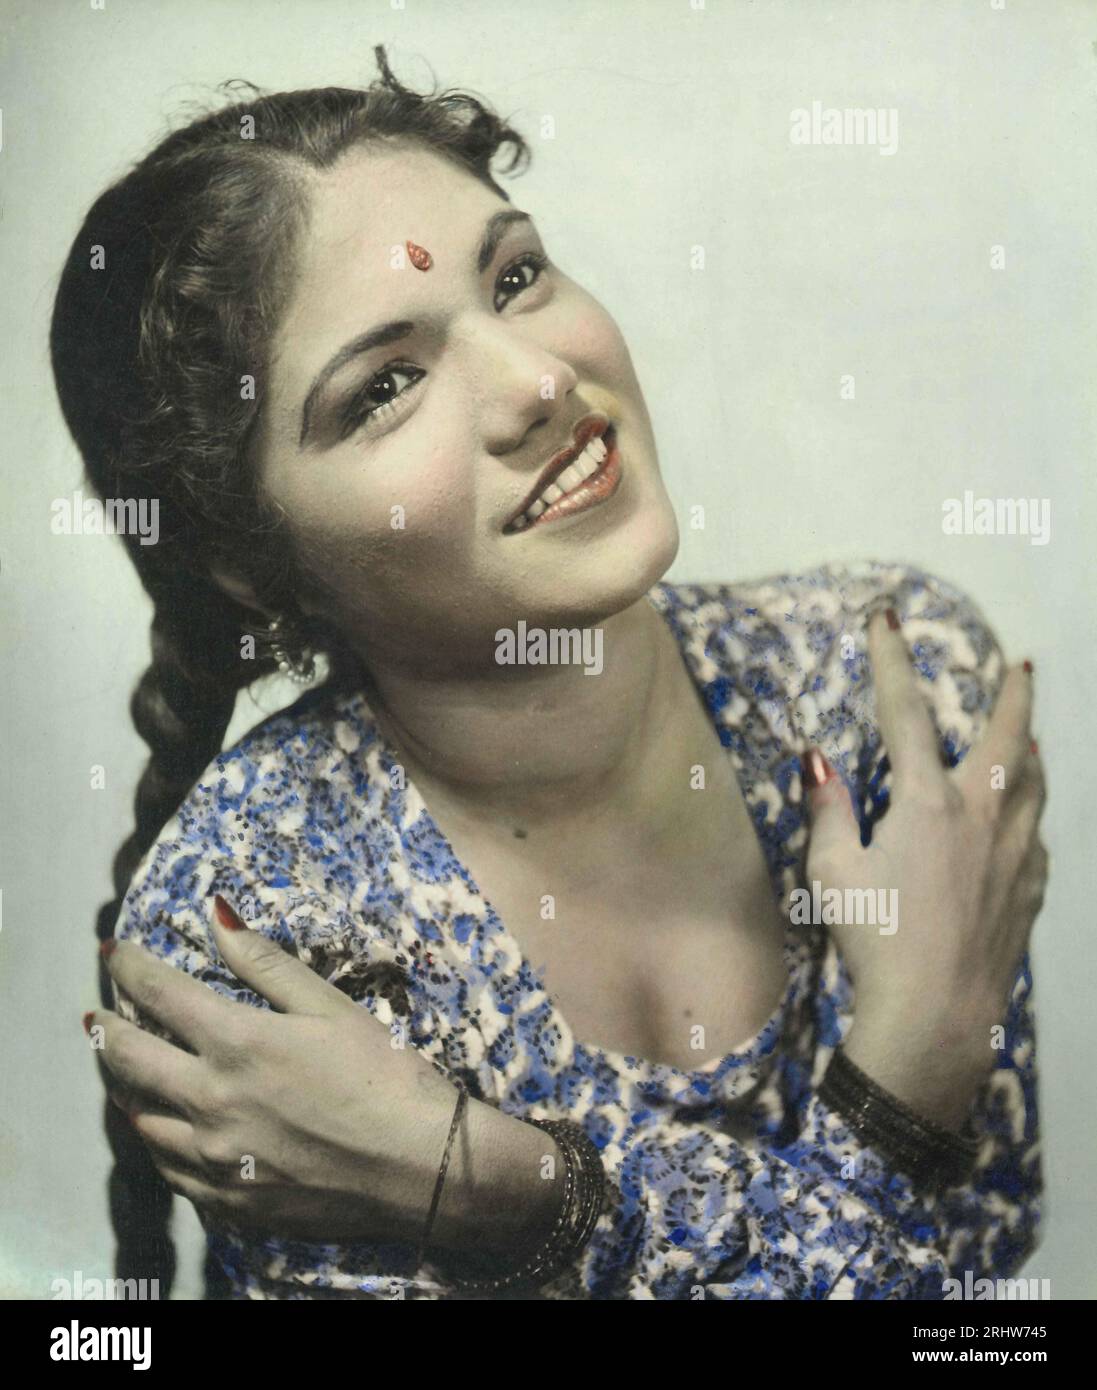 Vieux vintage original noir et blanc des années 1900 impression gélatine argentée portrait coloré à la main Femme indienne Inde des années 1940 Banque D'Images